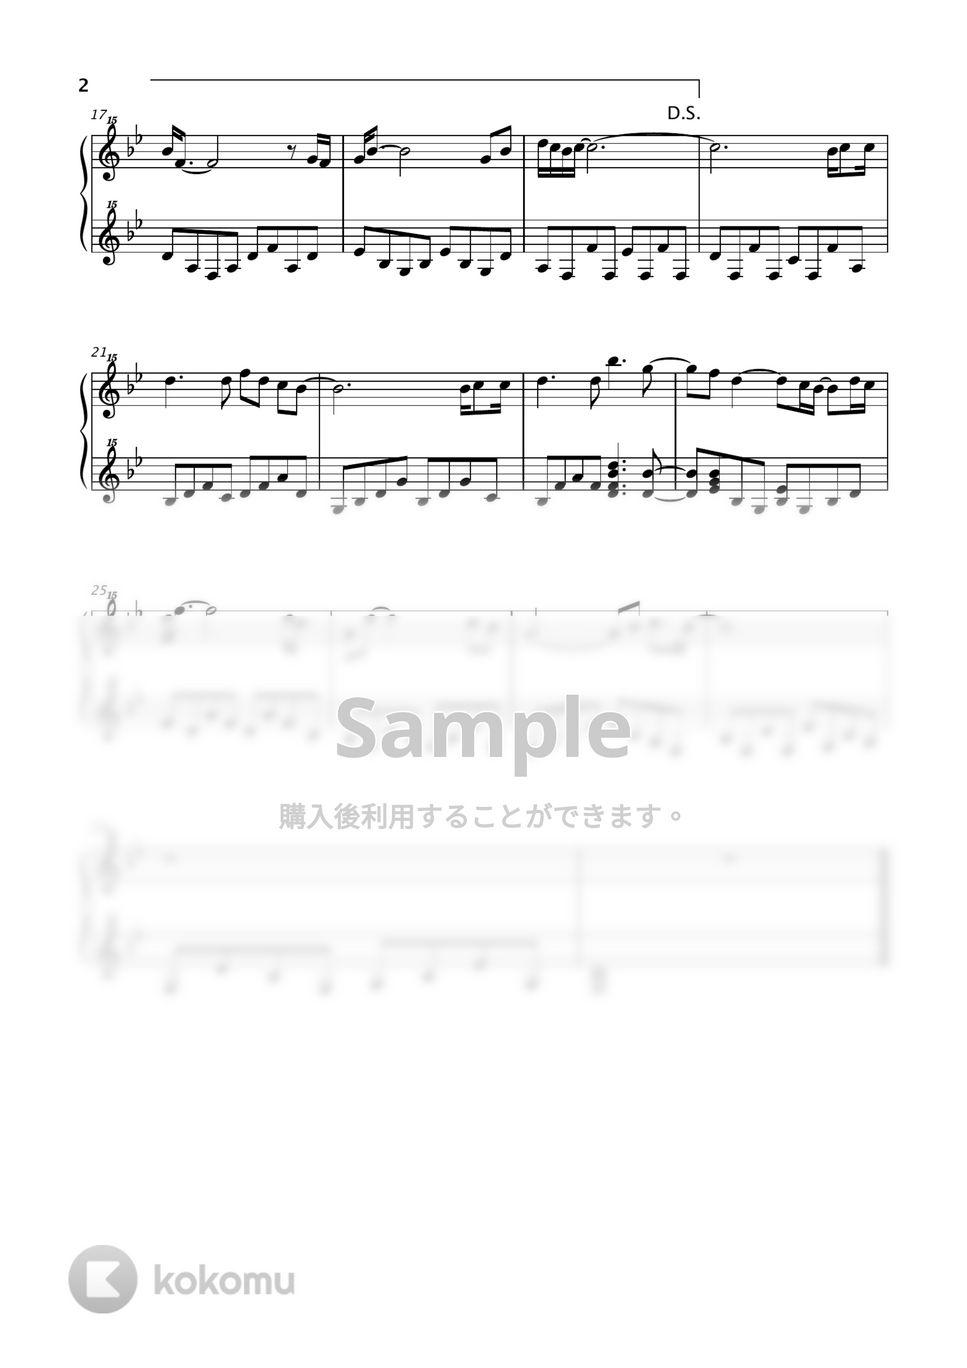 荒井由実 - ひこうき雲 (風立ちぬ / トイピアノ / 32鍵盤) by 川西三裕